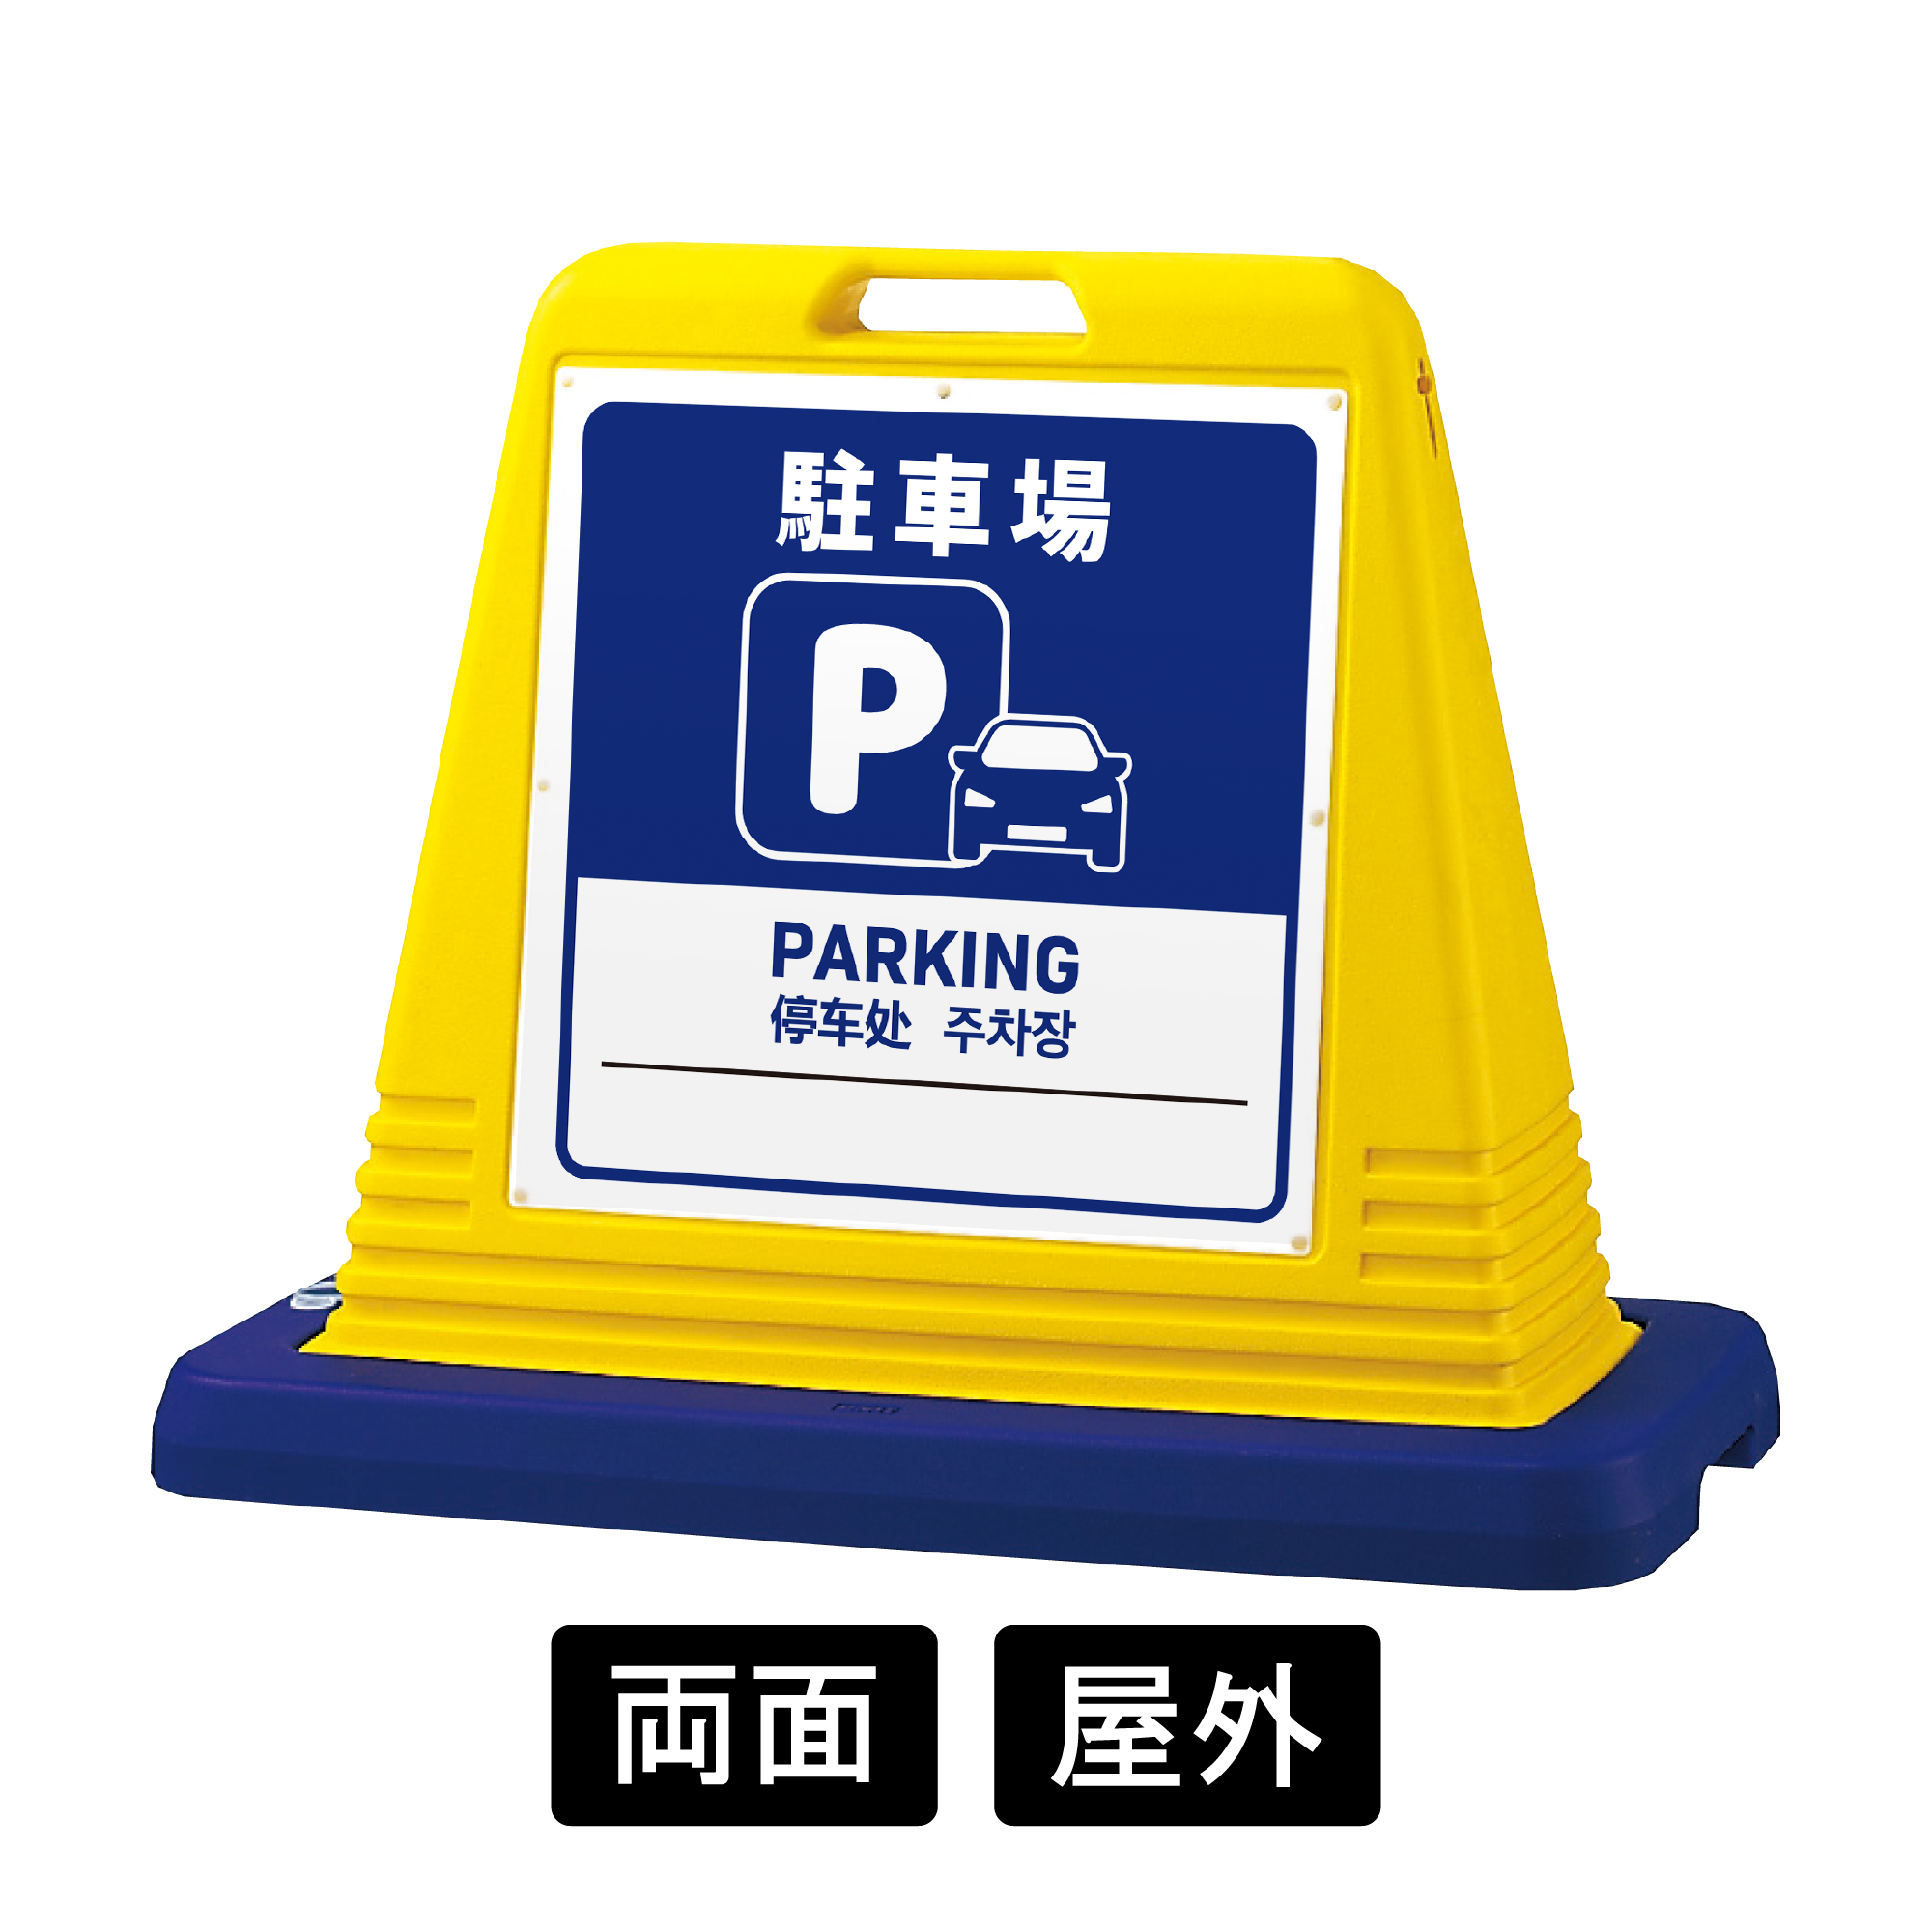 サインキューブ 「駐車場」 両面表示 イエロー SignWebオリジナル 多言語 ユニバーサルデザイン